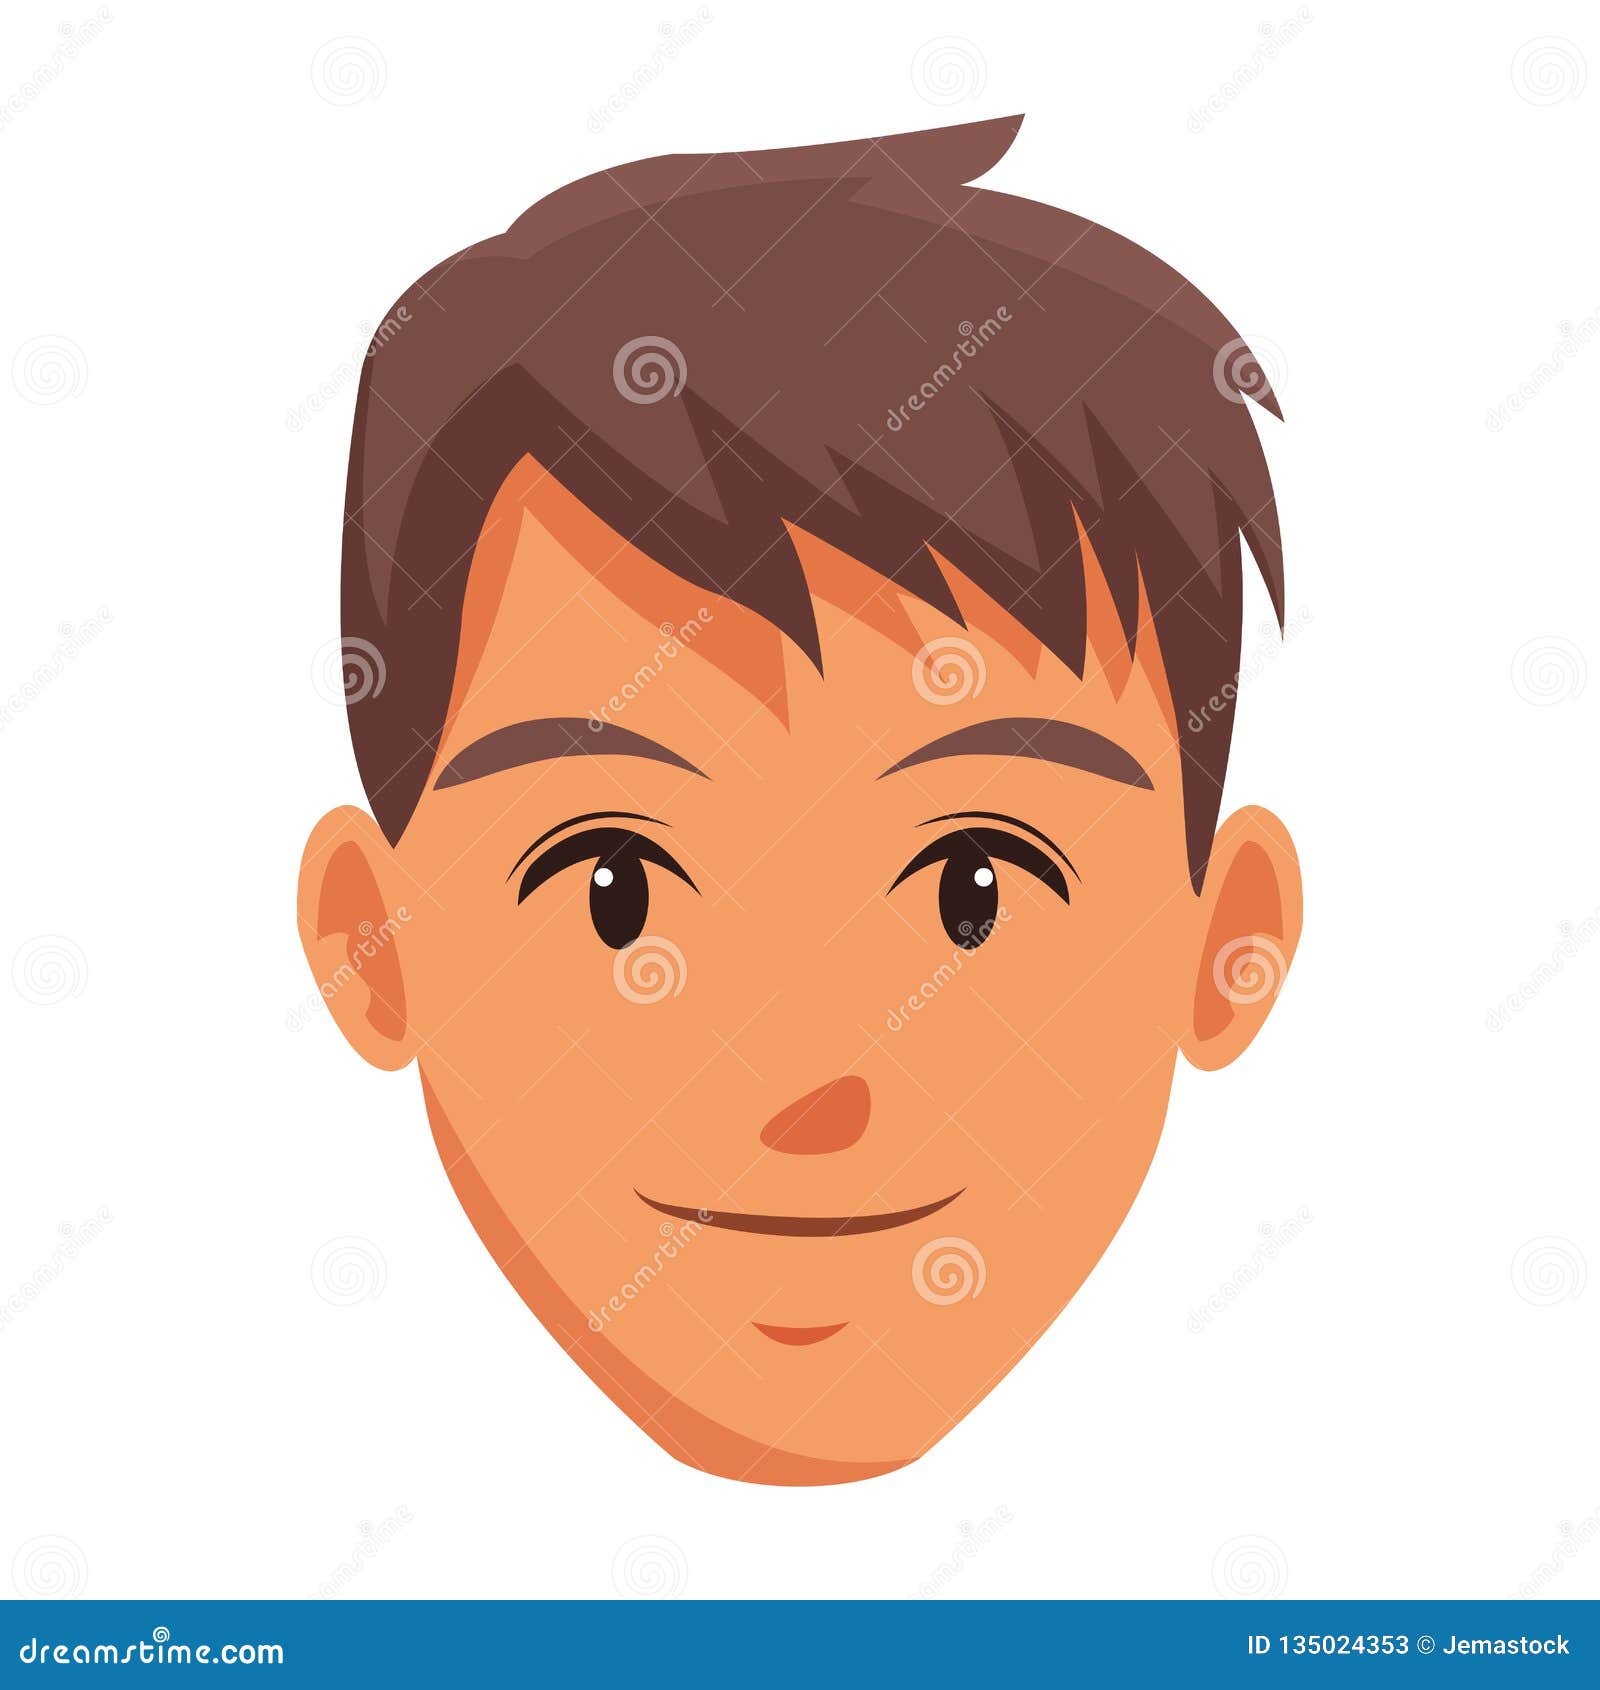 Cute man face cartoon stock vector. Illustration of eyes - 135024353